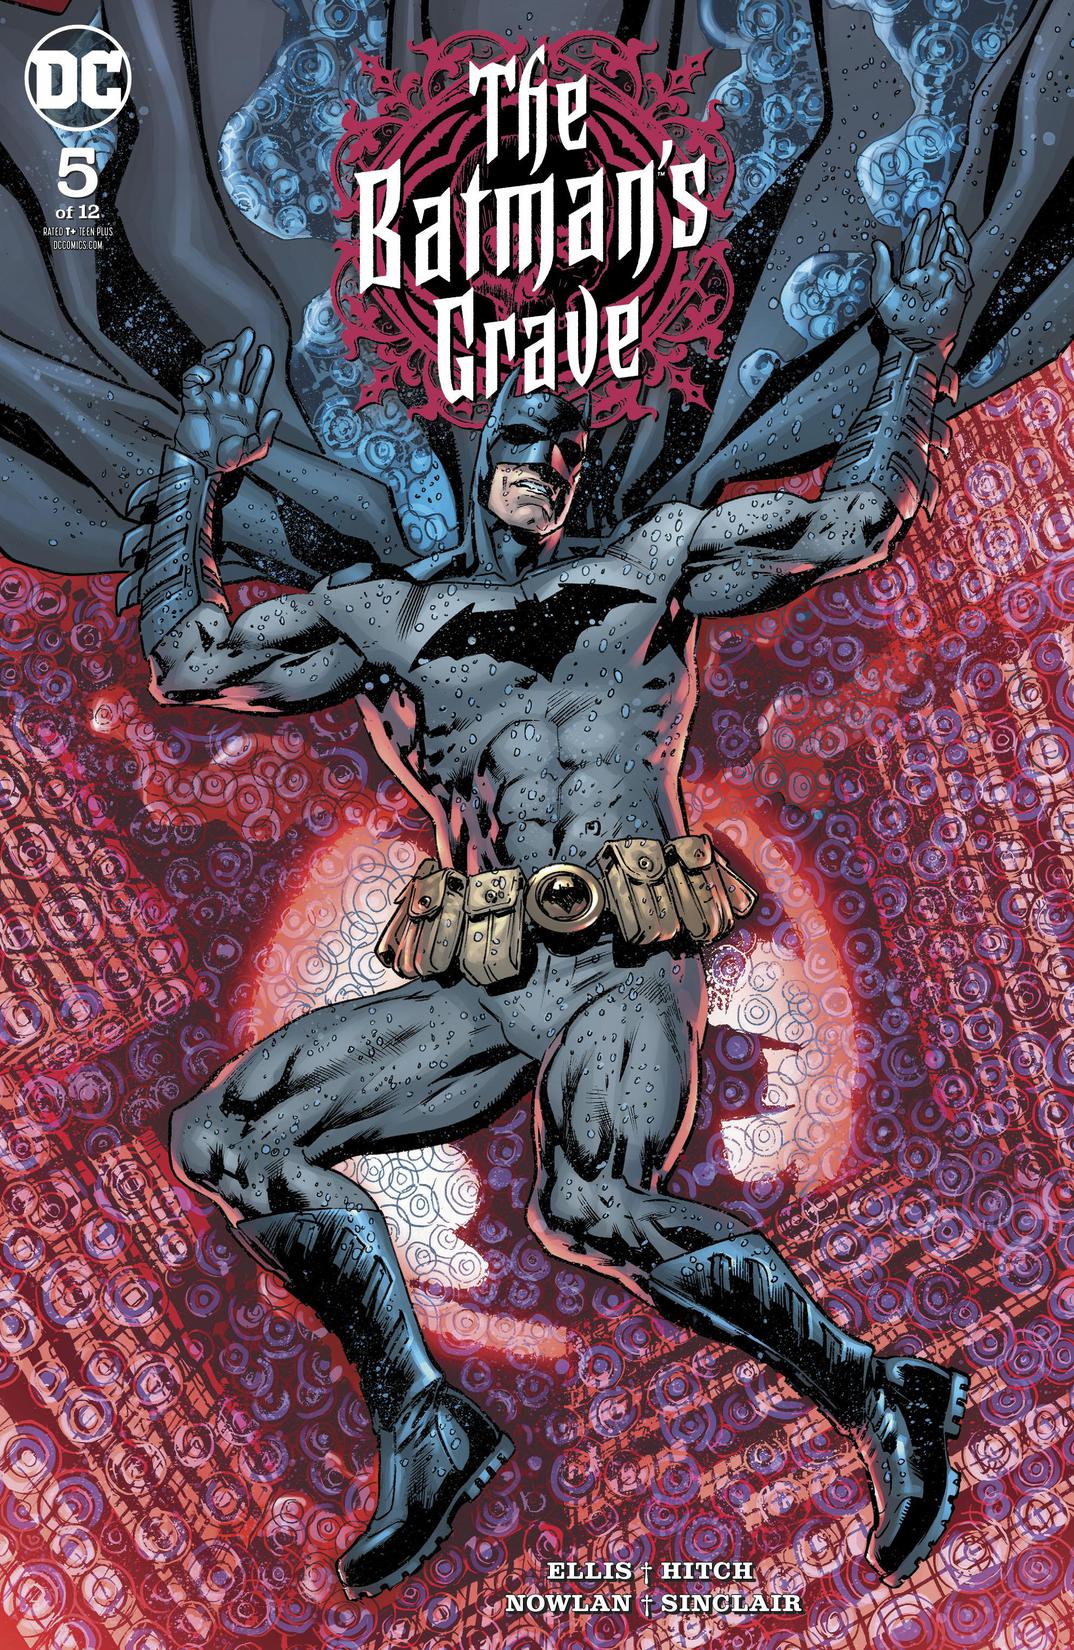 The Batman's Grave #5 preview images